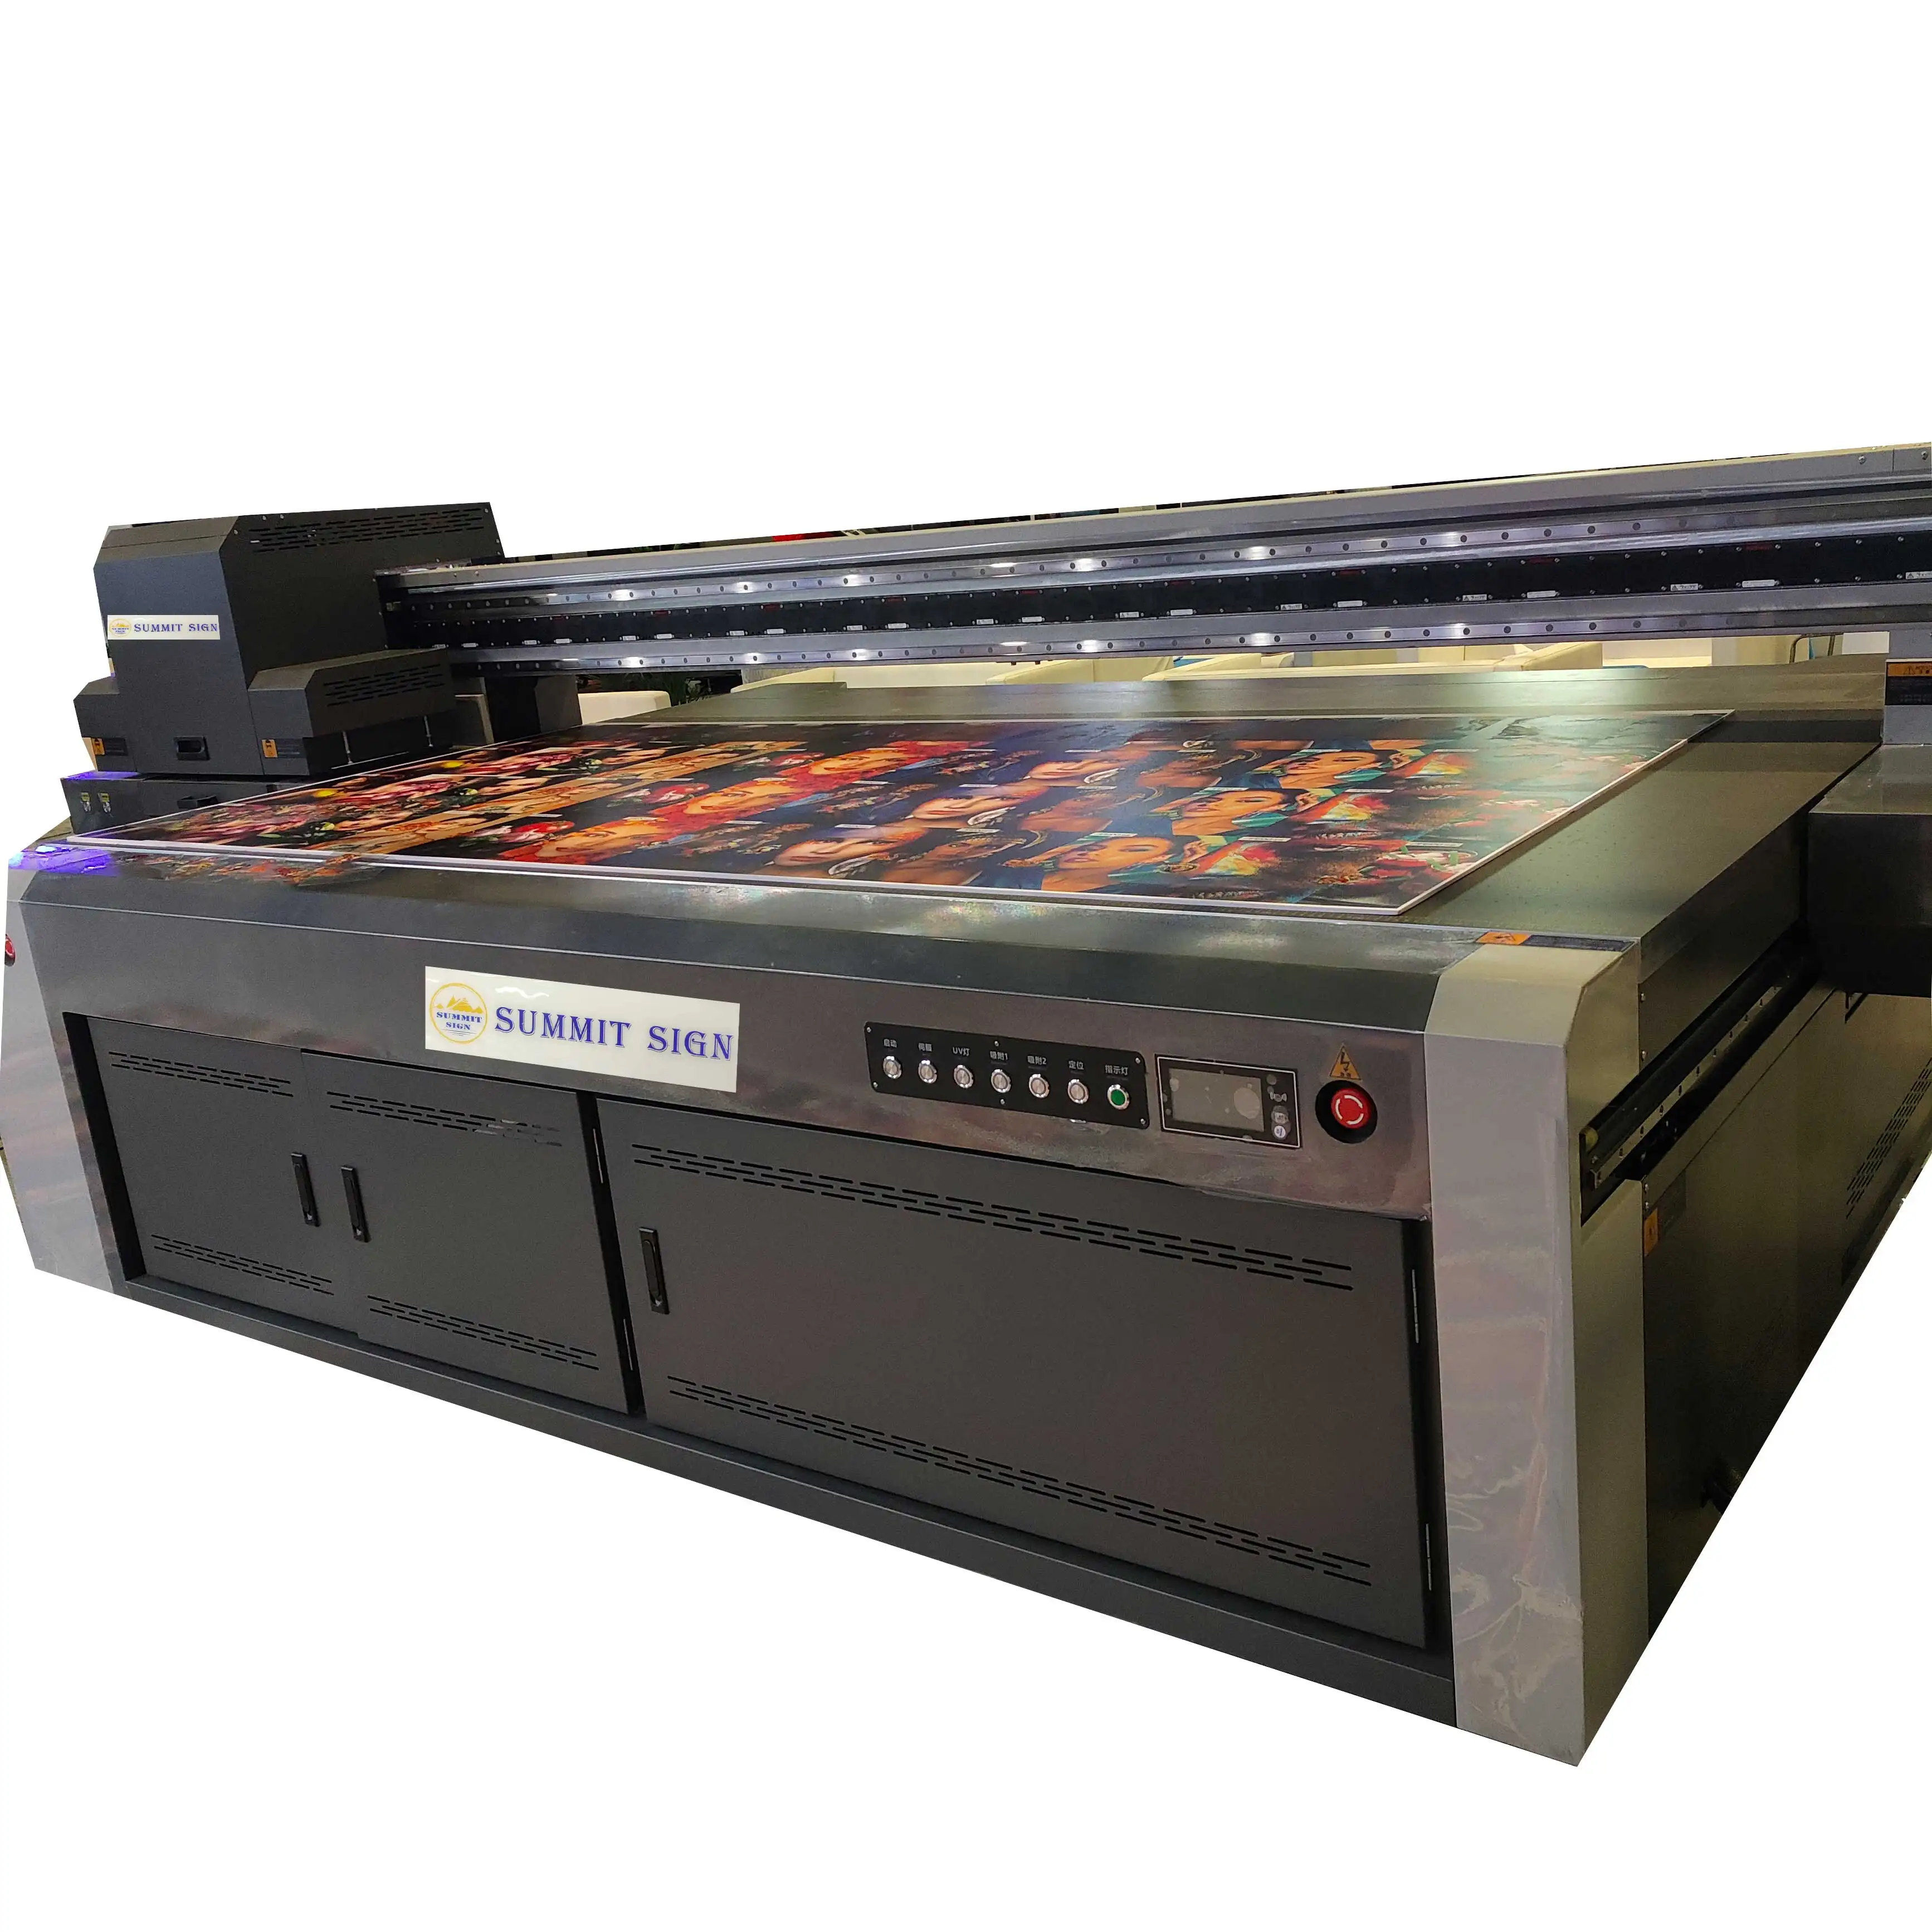 Планшетный УФ-принтер SUMMIT SIGN -2713/2513, широкоформатный цифровой струйный принтер 8*4 дюйма